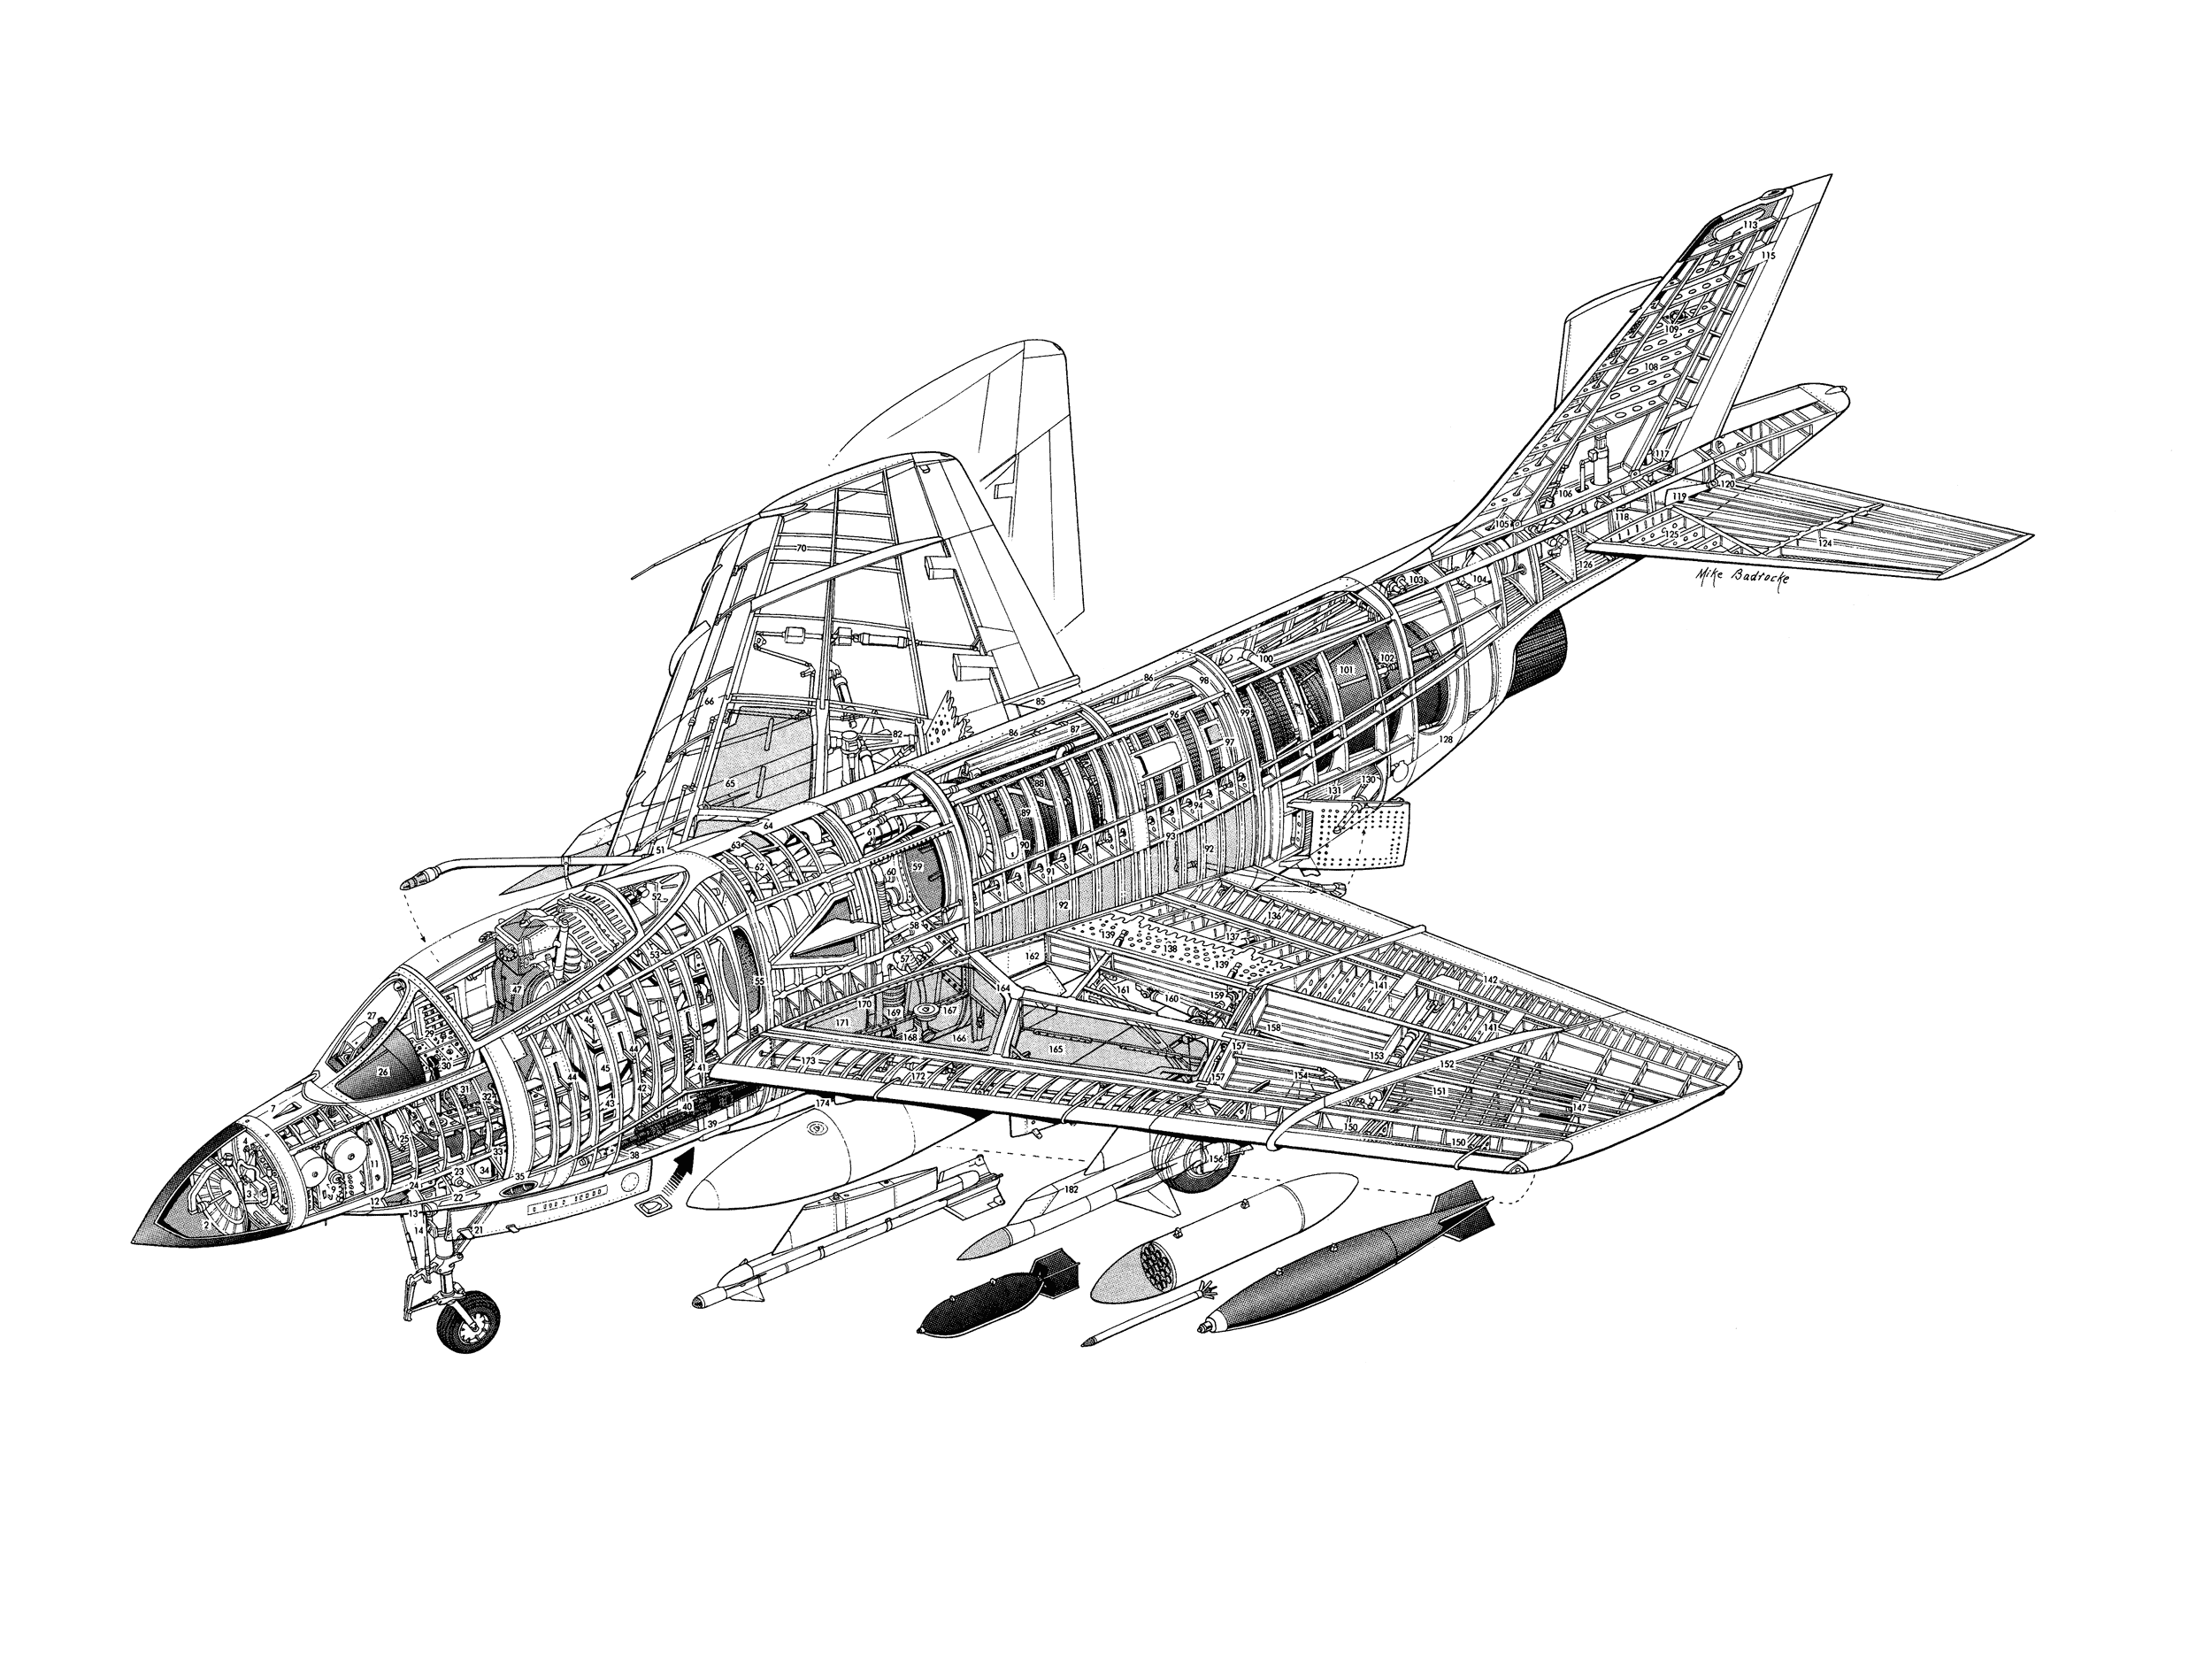 McDonnell F3H Demon cutaway